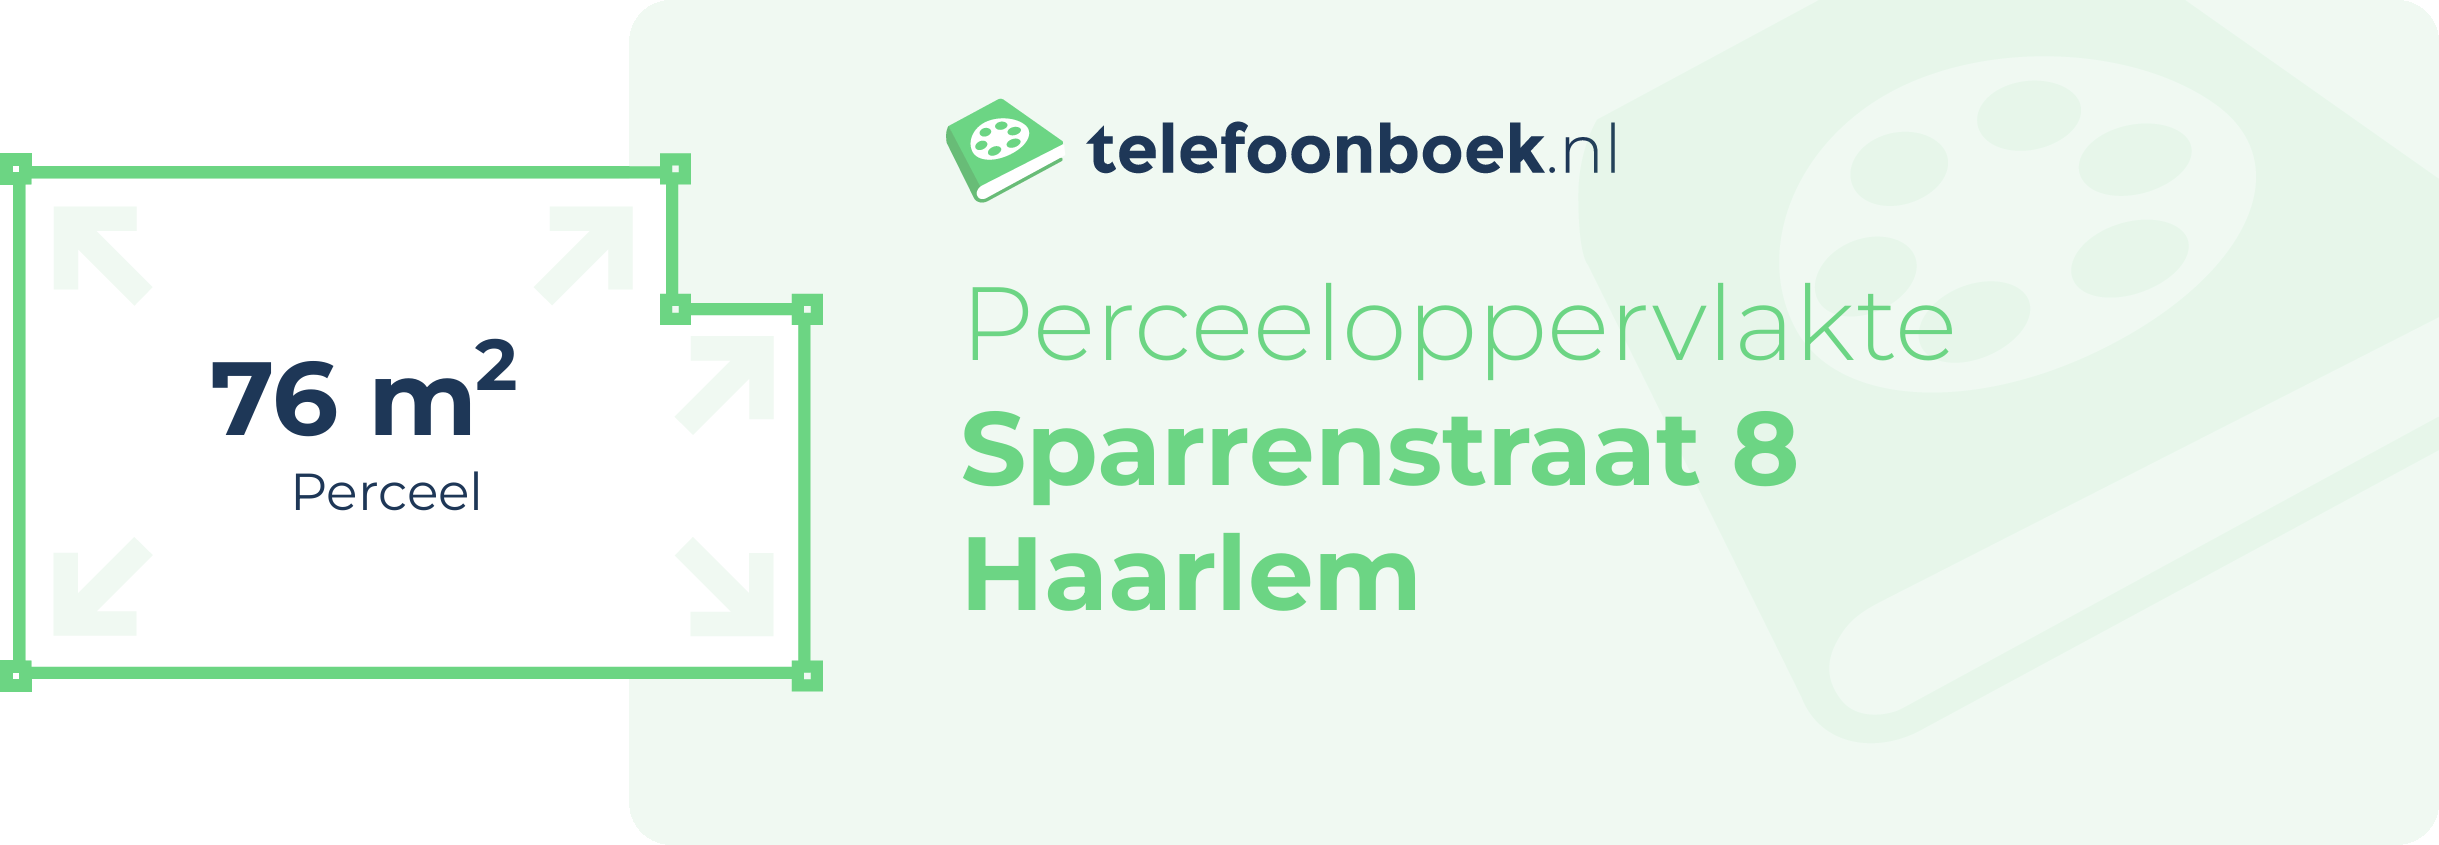 Perceeloppervlakte Sparrenstraat 8 Haarlem